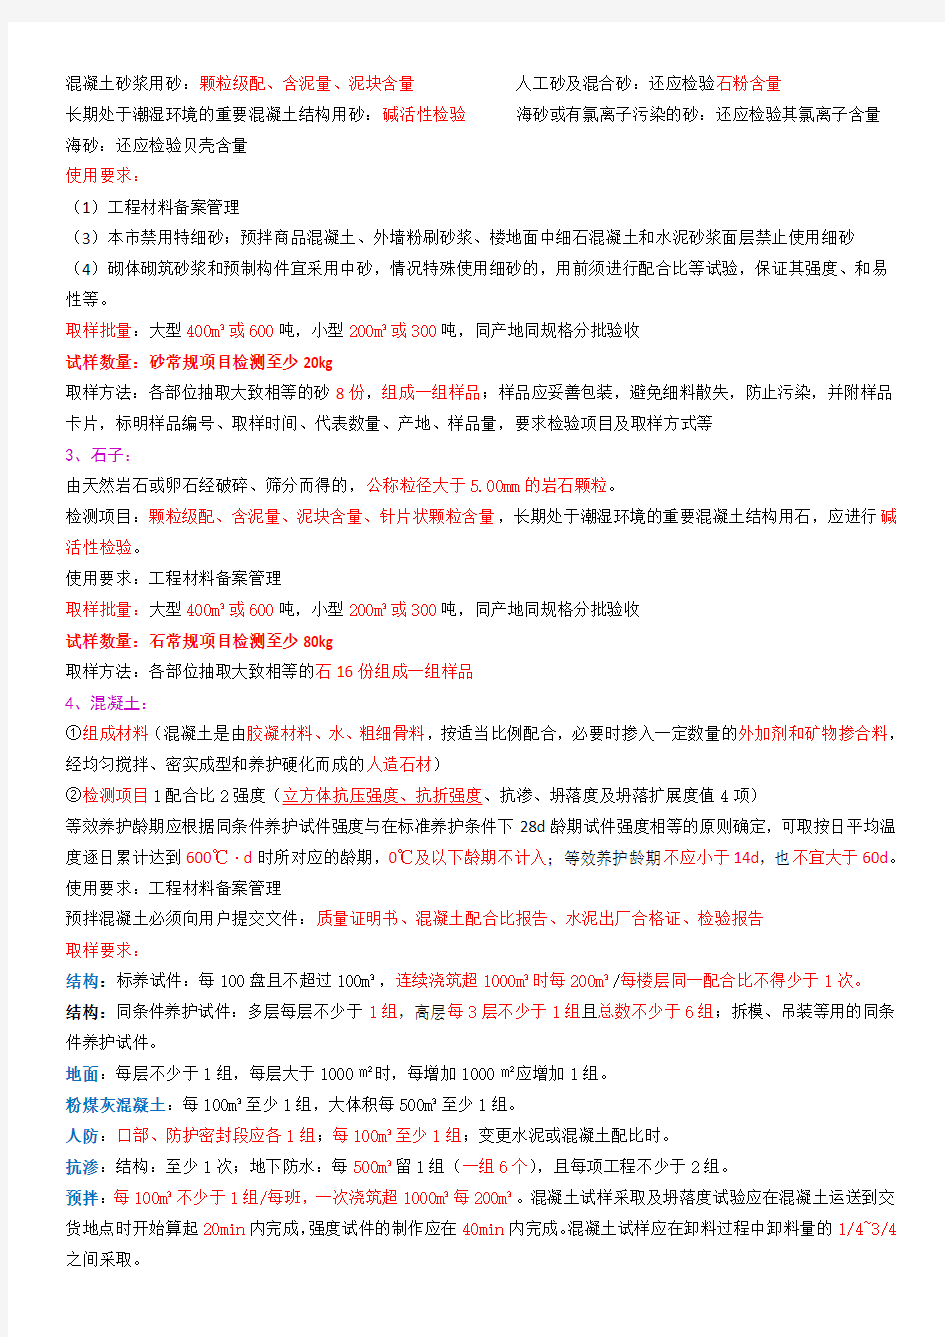 上海市见证员取样员考试(内部资料)